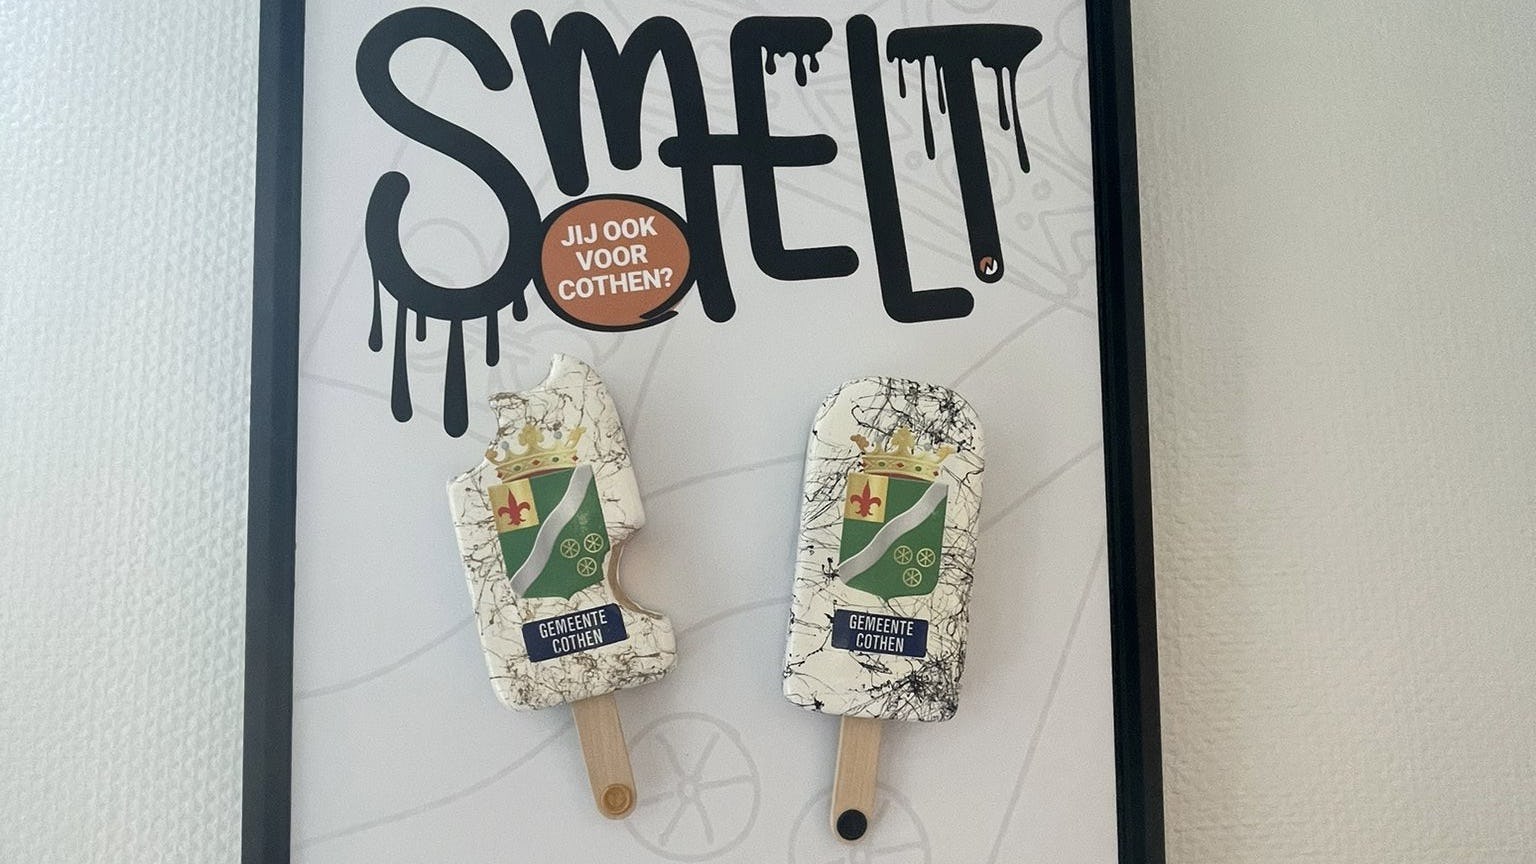 Snackb-art bij Het Oude Raedthuys: 'vette kunst' in cafetaria